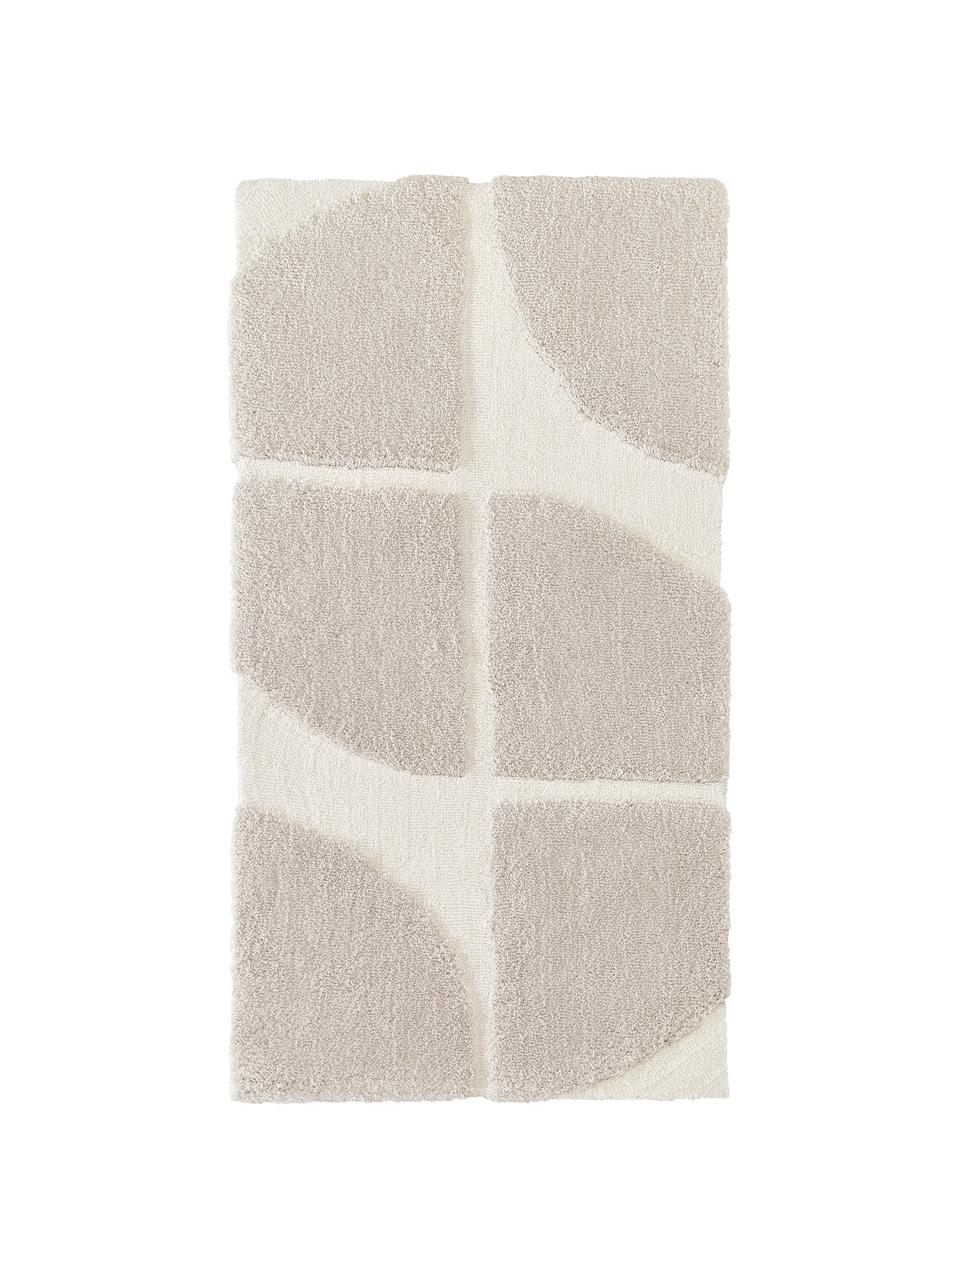 Načechraný koberec s vysokým vlasem a strukturovaným povrchem Jade, Béžová, krémově bílá, Š 80 cm, D 150 cm (velikost XS)